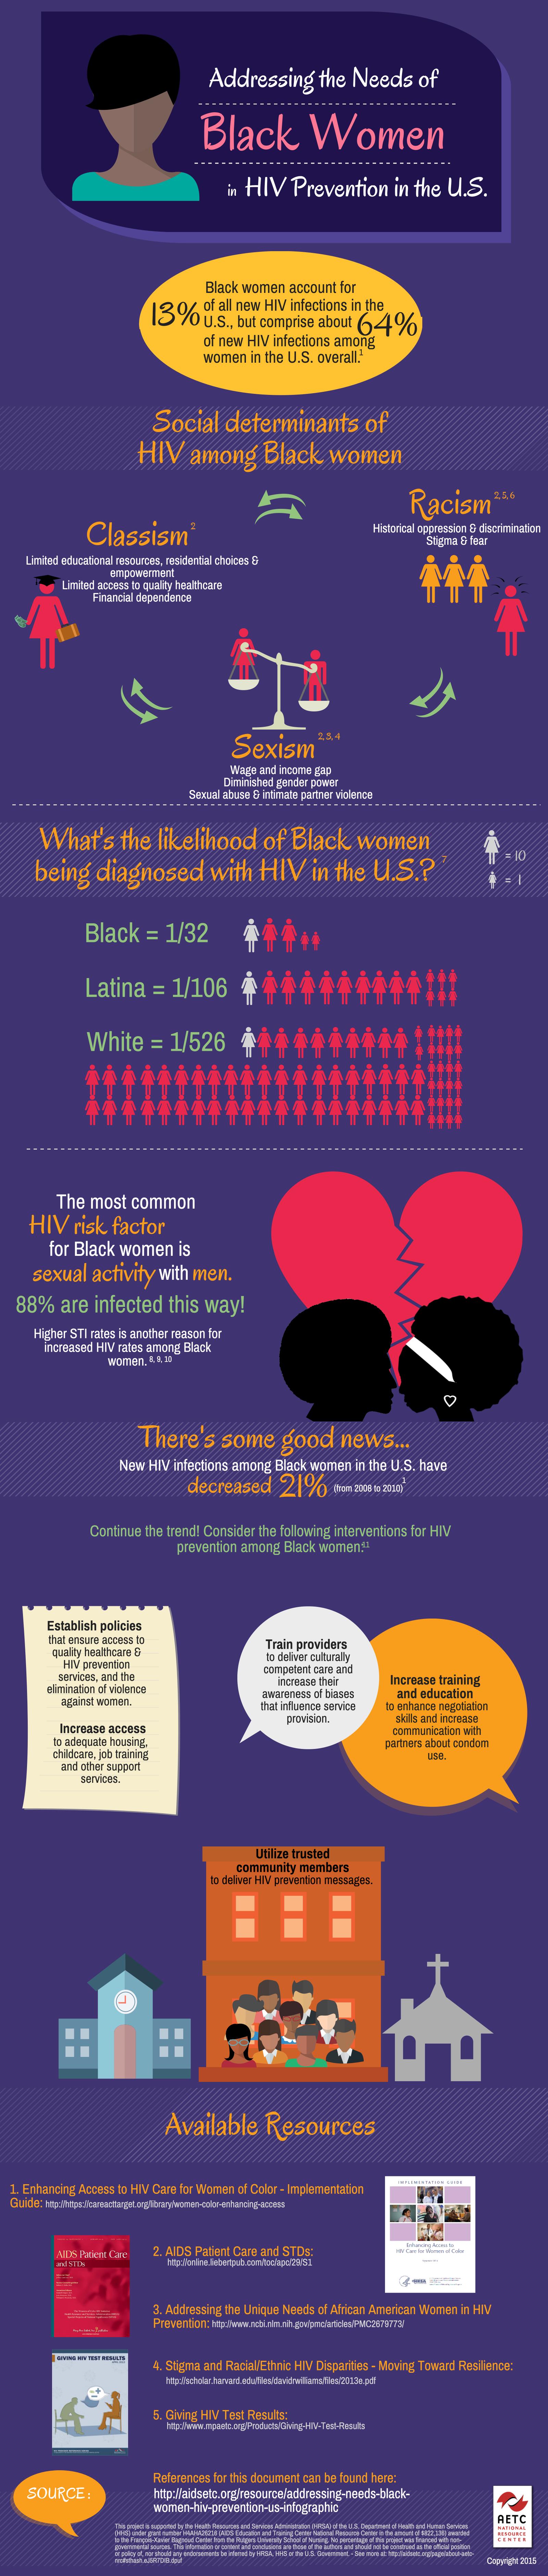 Black Women & HIV in the U.S.